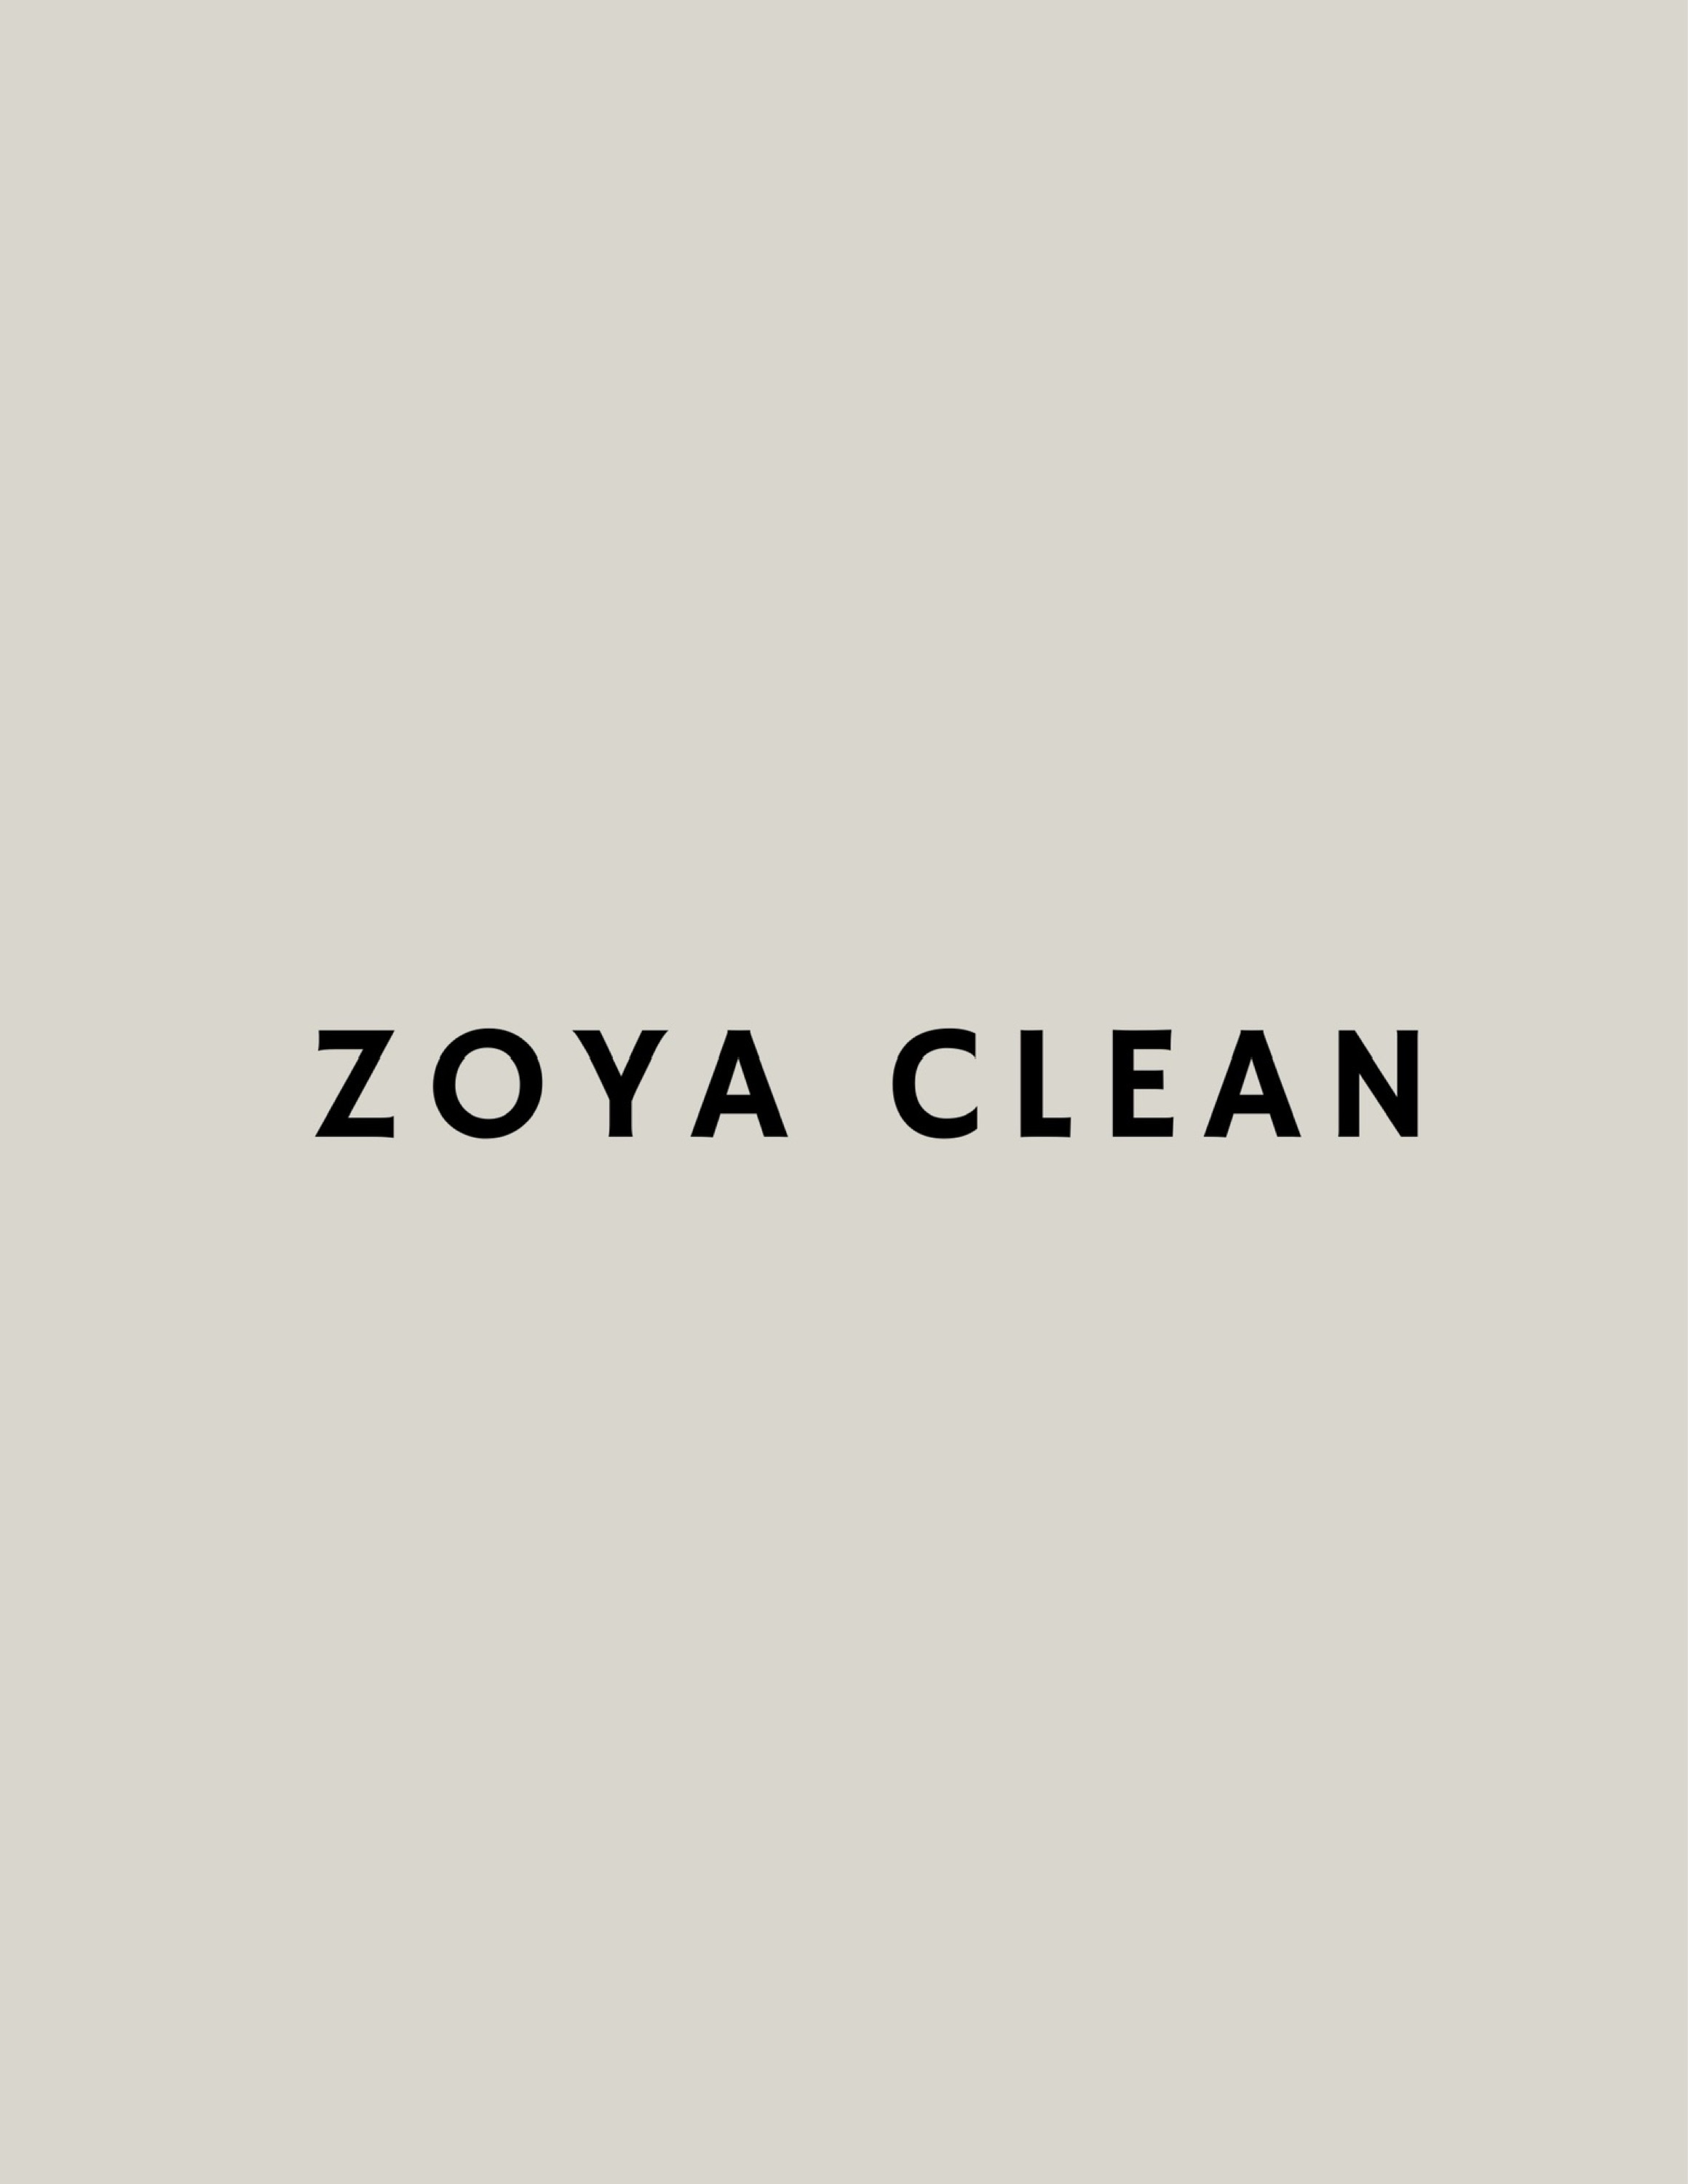 Zoya Clean Logo